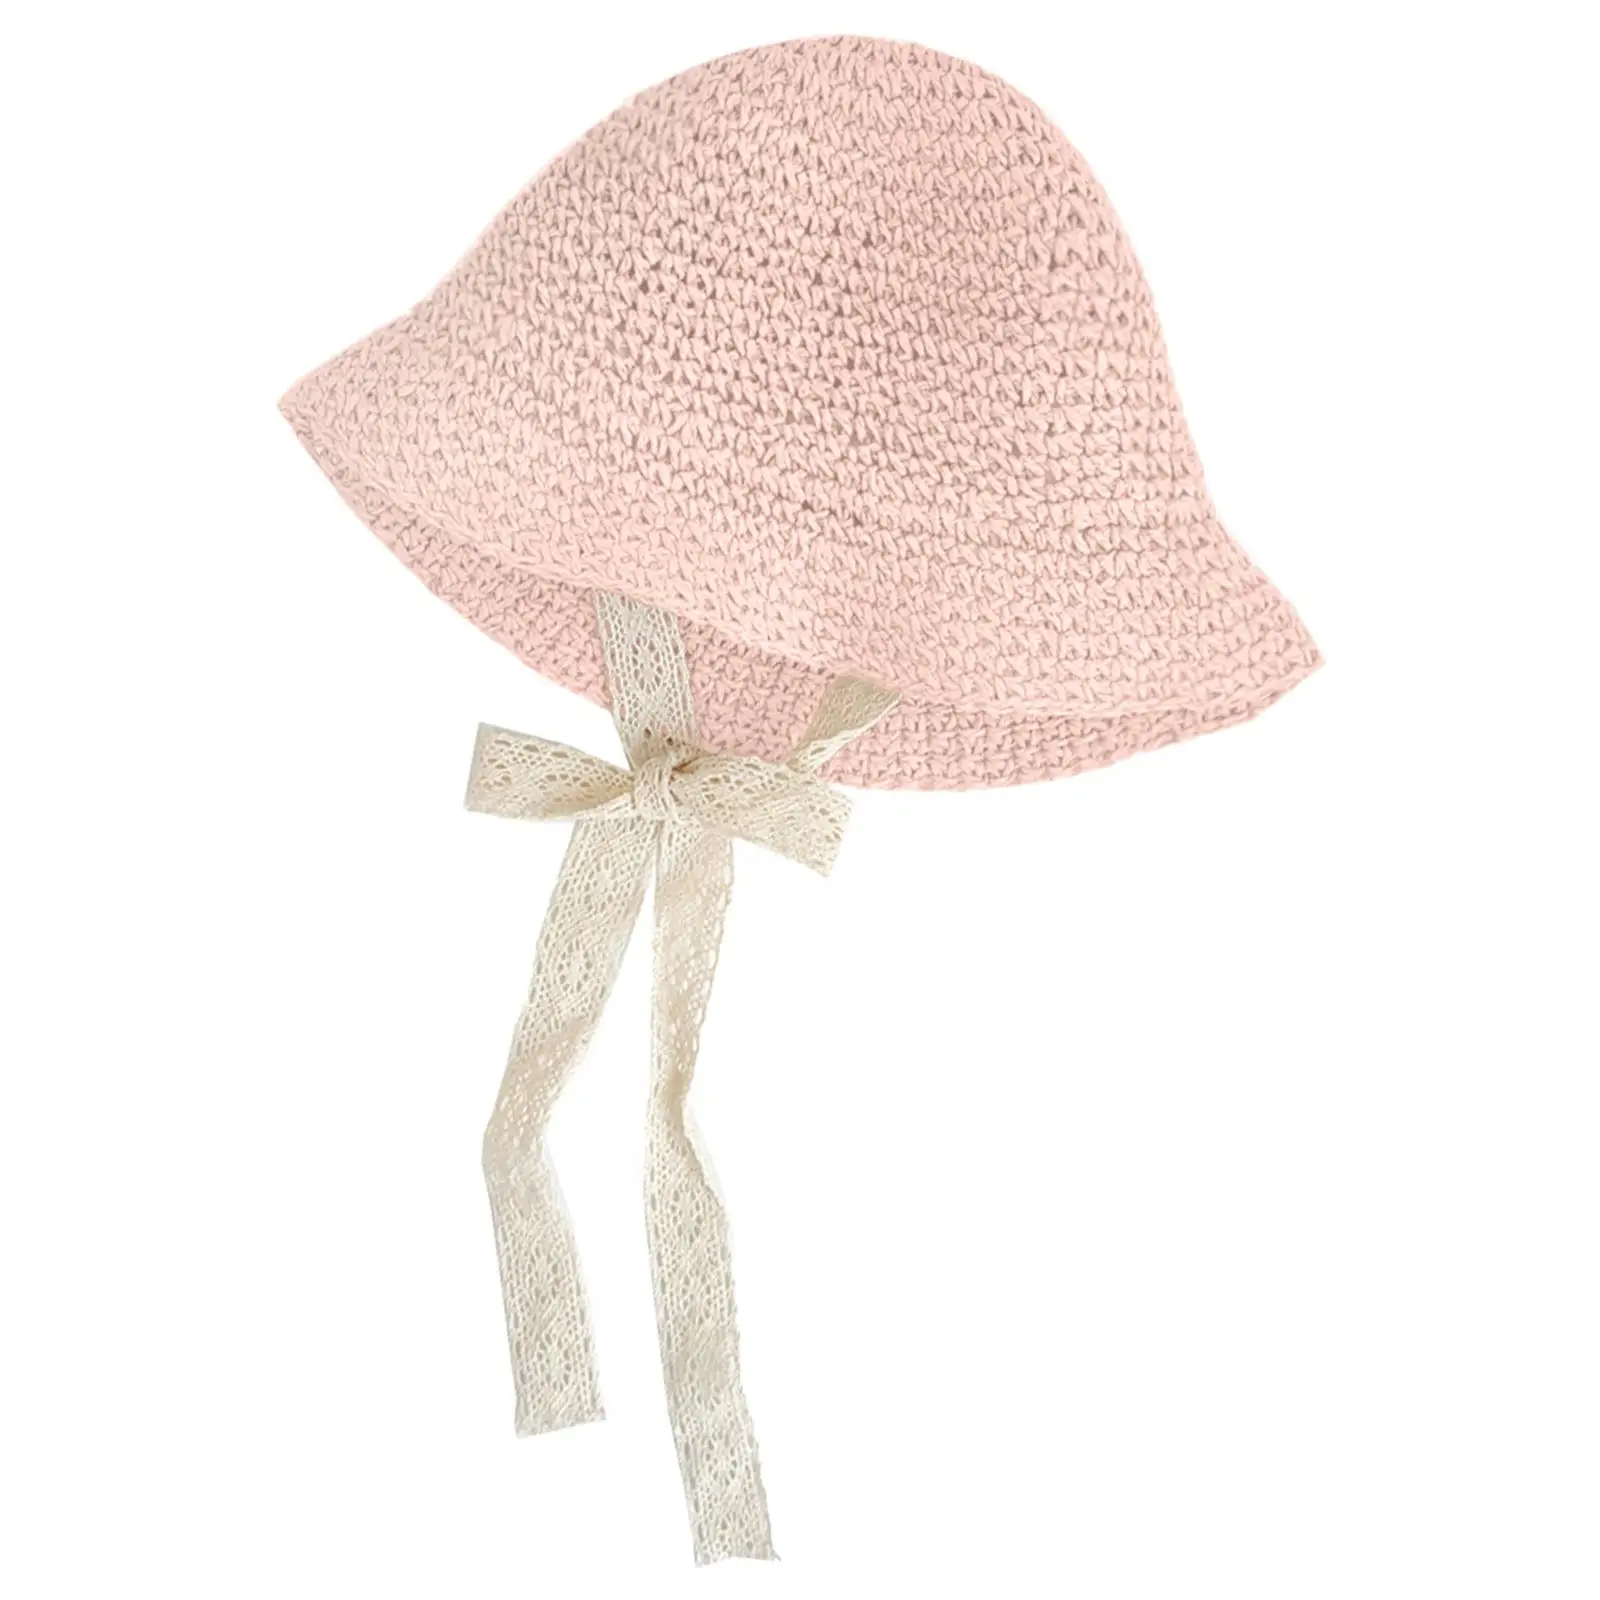  Hat Floppy Summer  Chain Strap Wide Brim Straw Hat Sun Protection Beach Children Panama Hat Baby Girl Caps